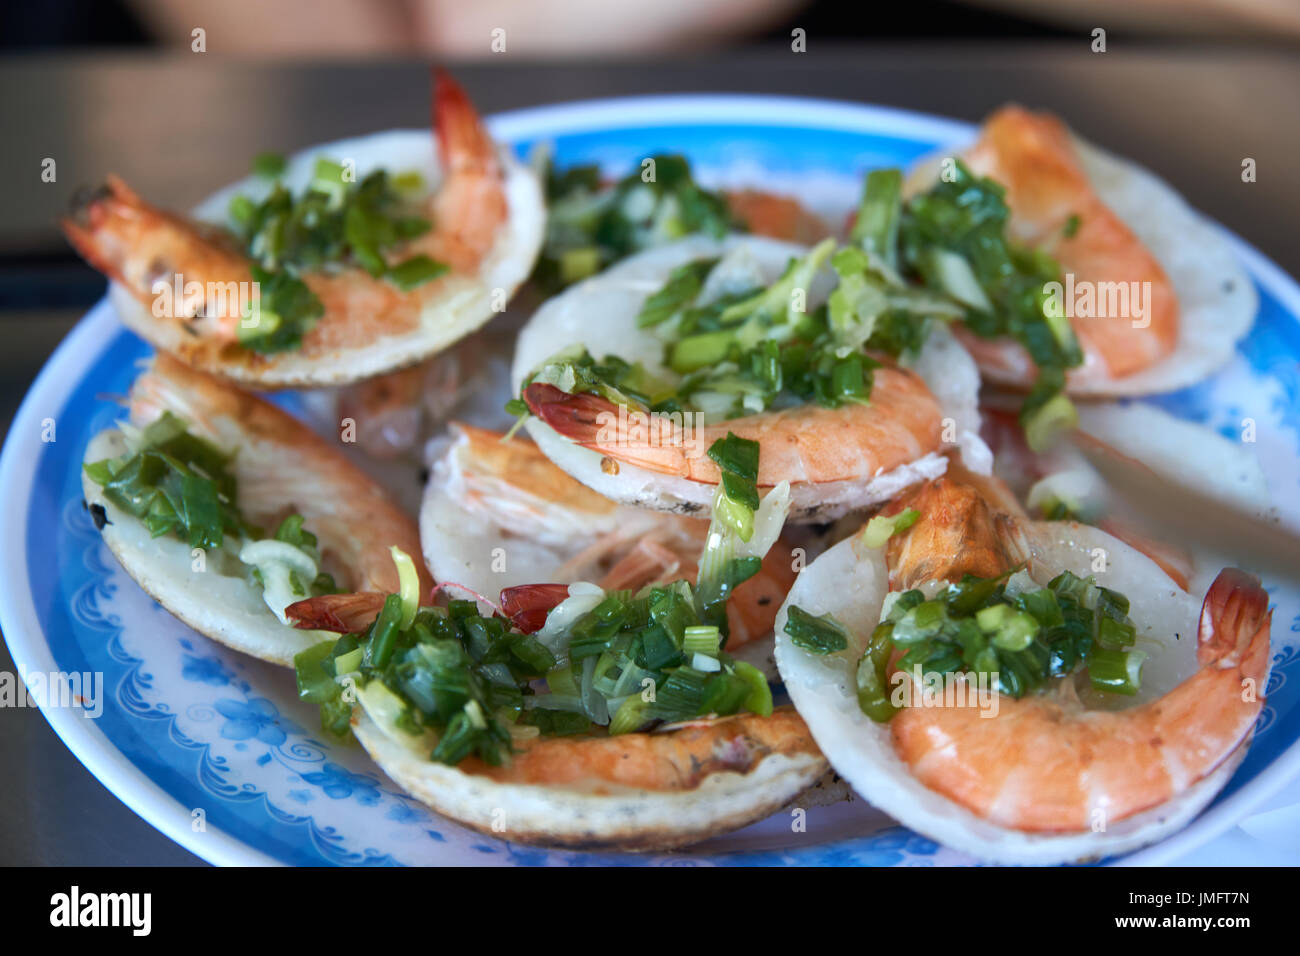 Vietnamesisches Essen und Gemüse auf Teller geben. Nha Trang, Vietnam. Stockfoto